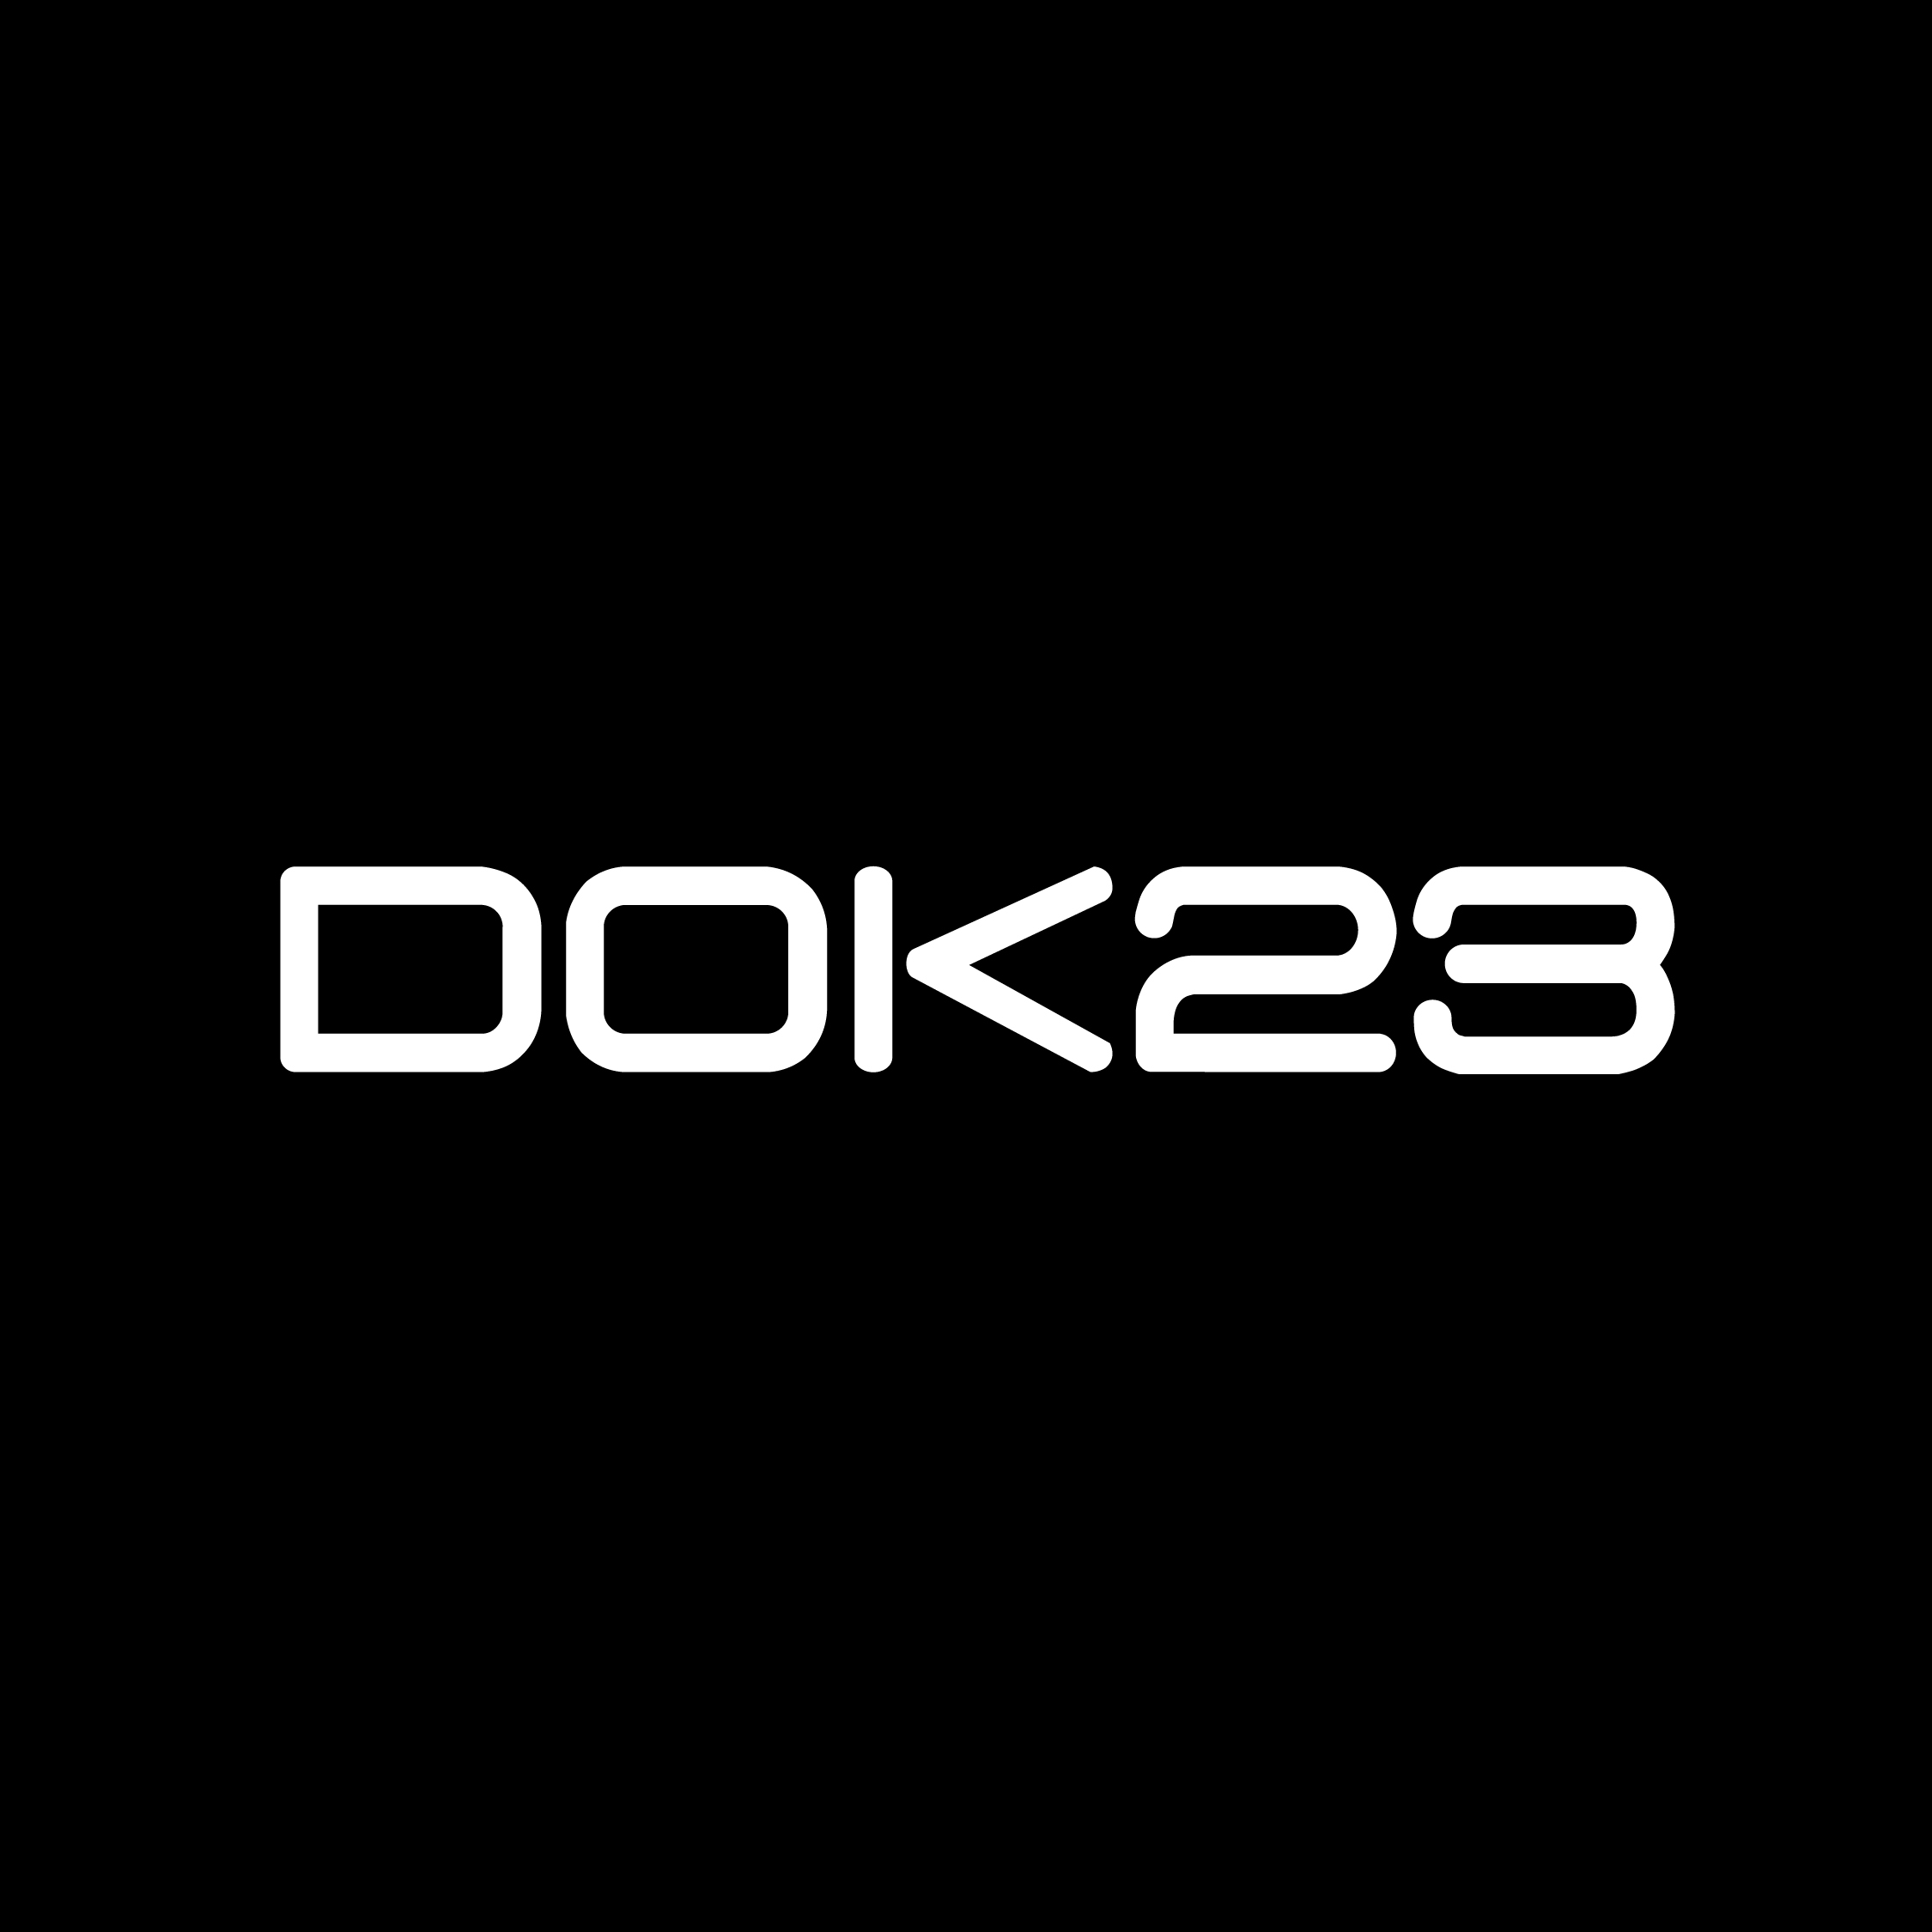 DOK23